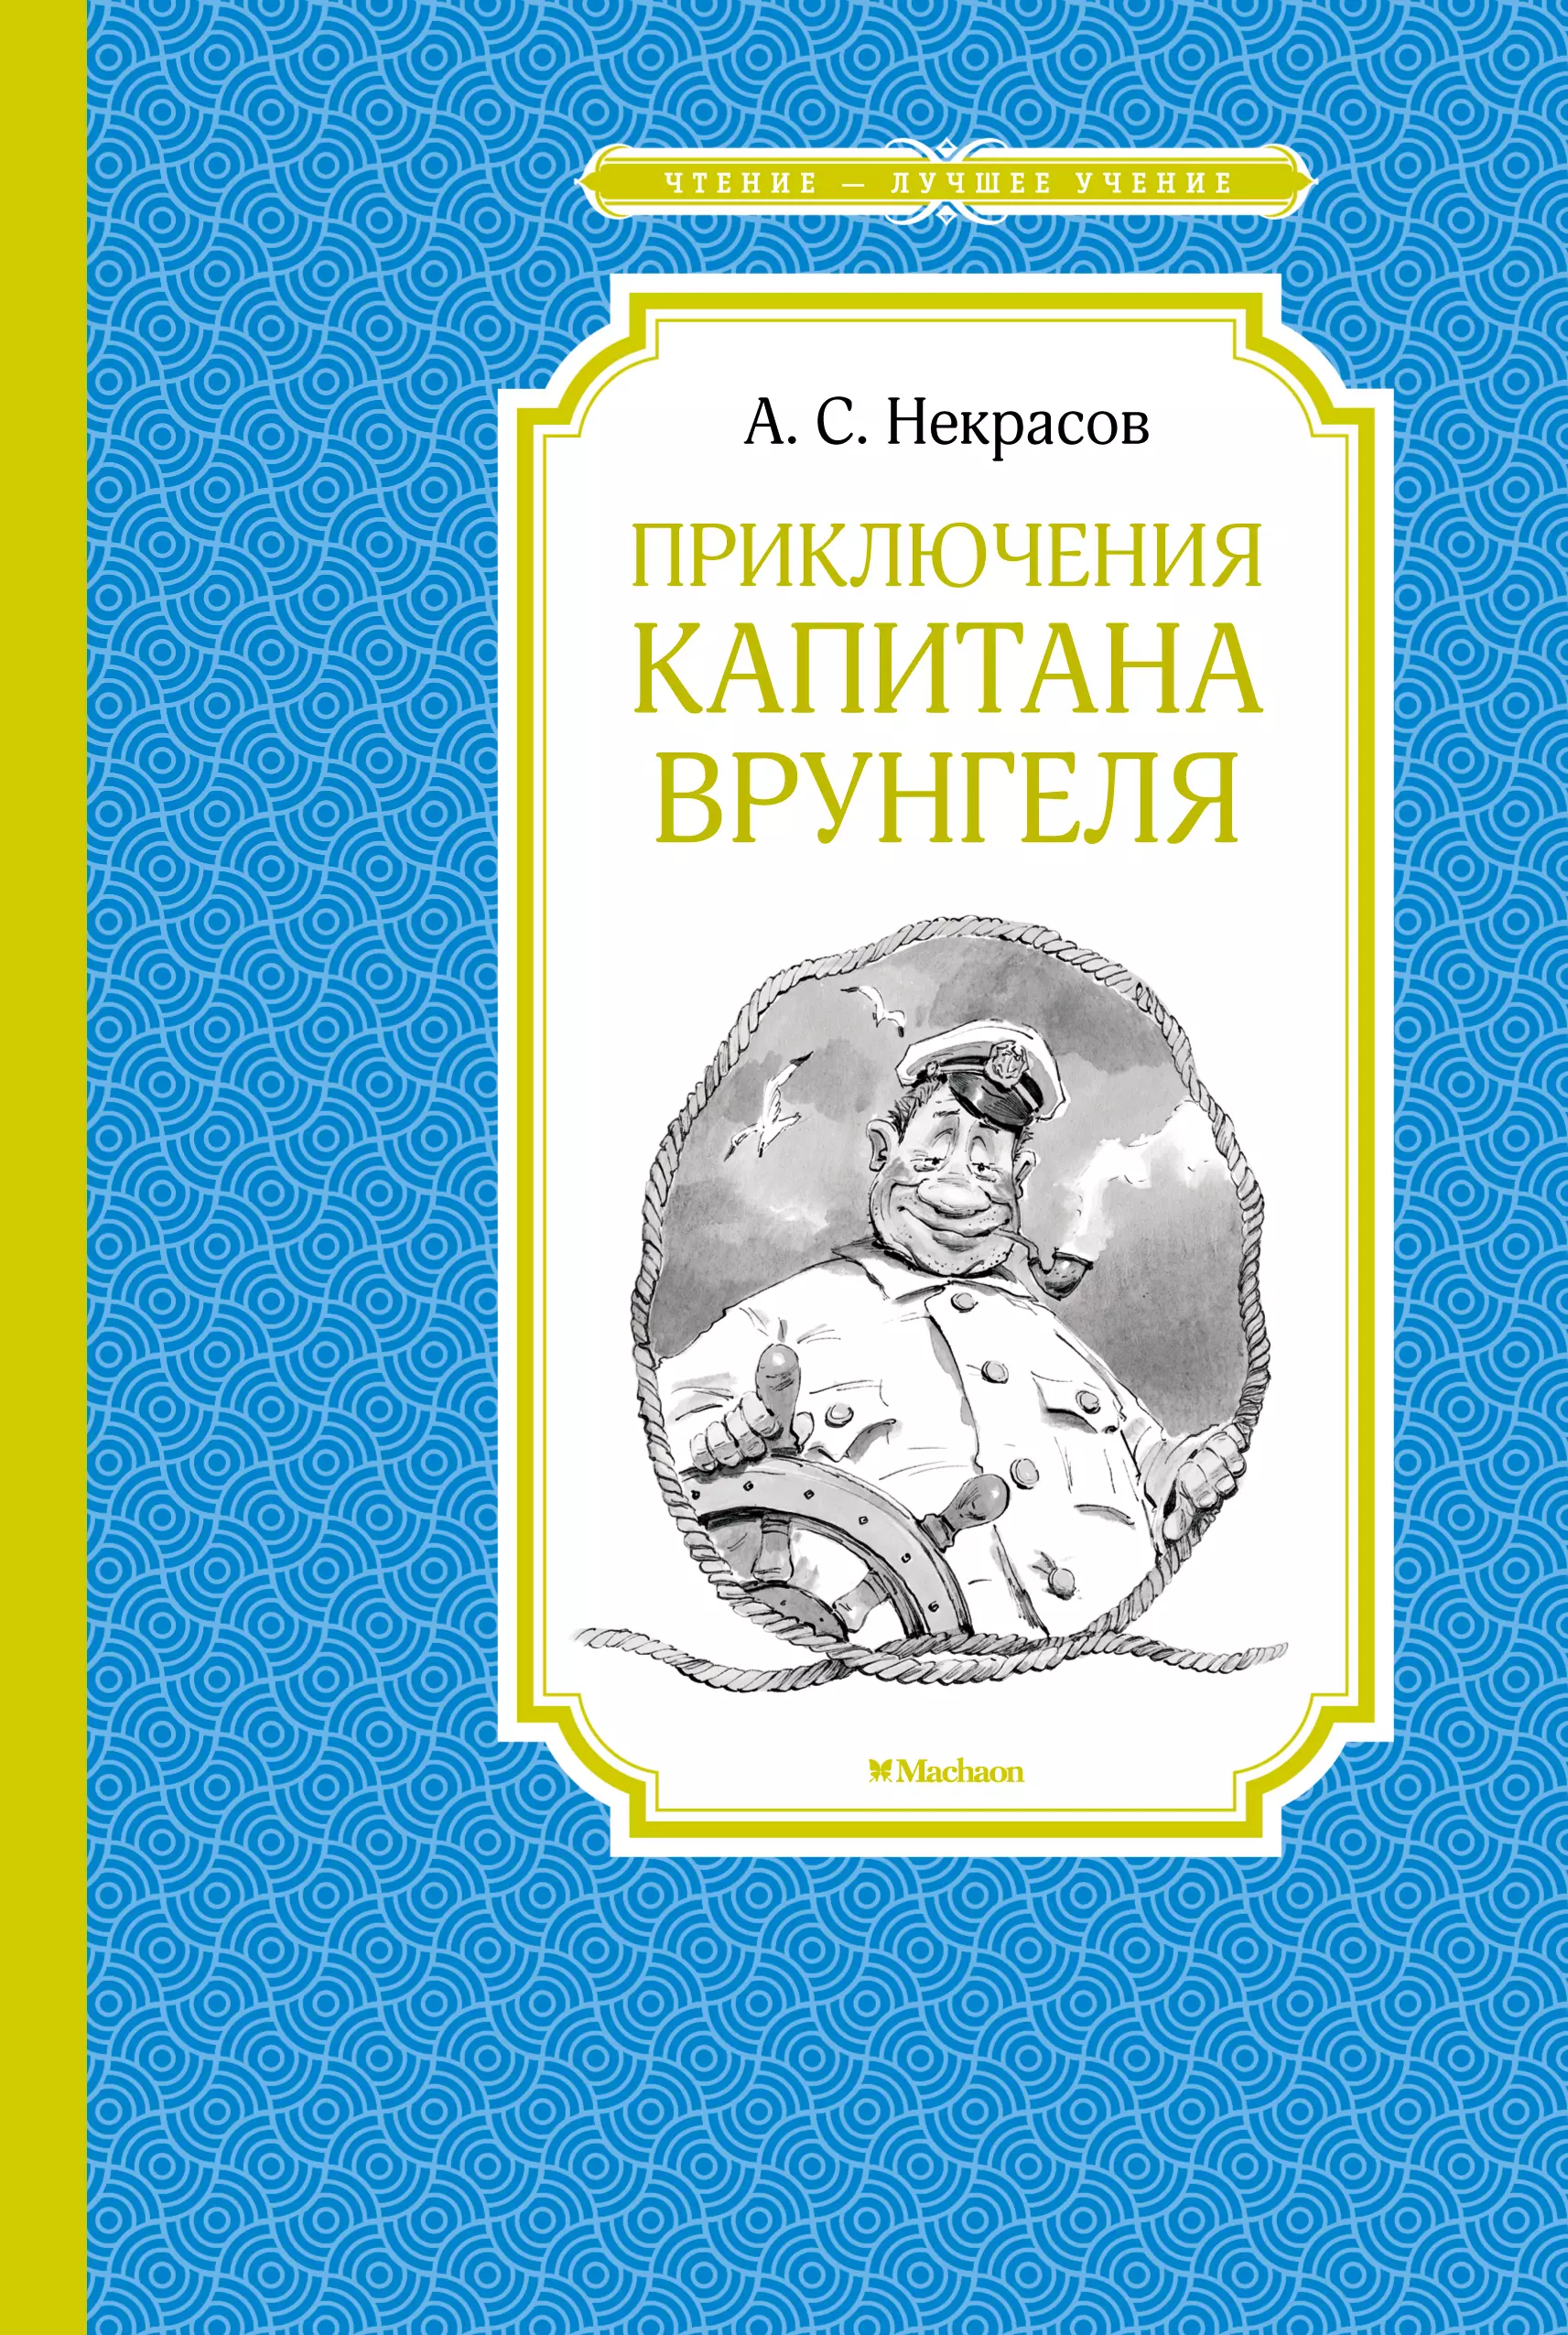 Некрасов Андрей Сергеевич - Приключения капитана Врунгеля. Повесть-сказка